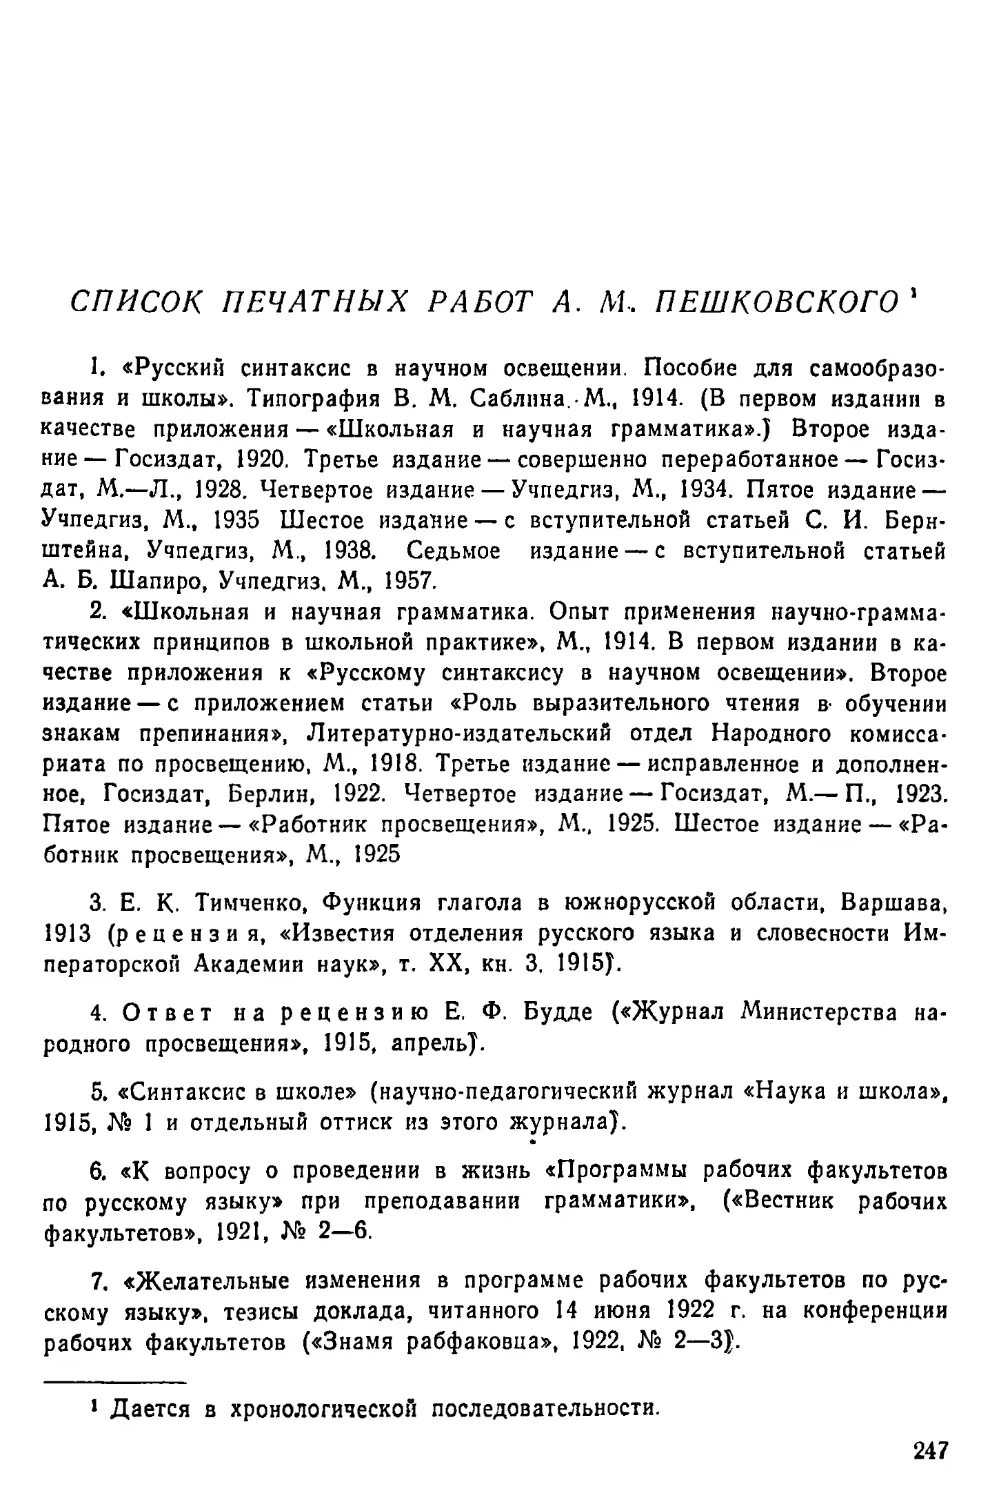 Список печатных работ А. М. Пешковского